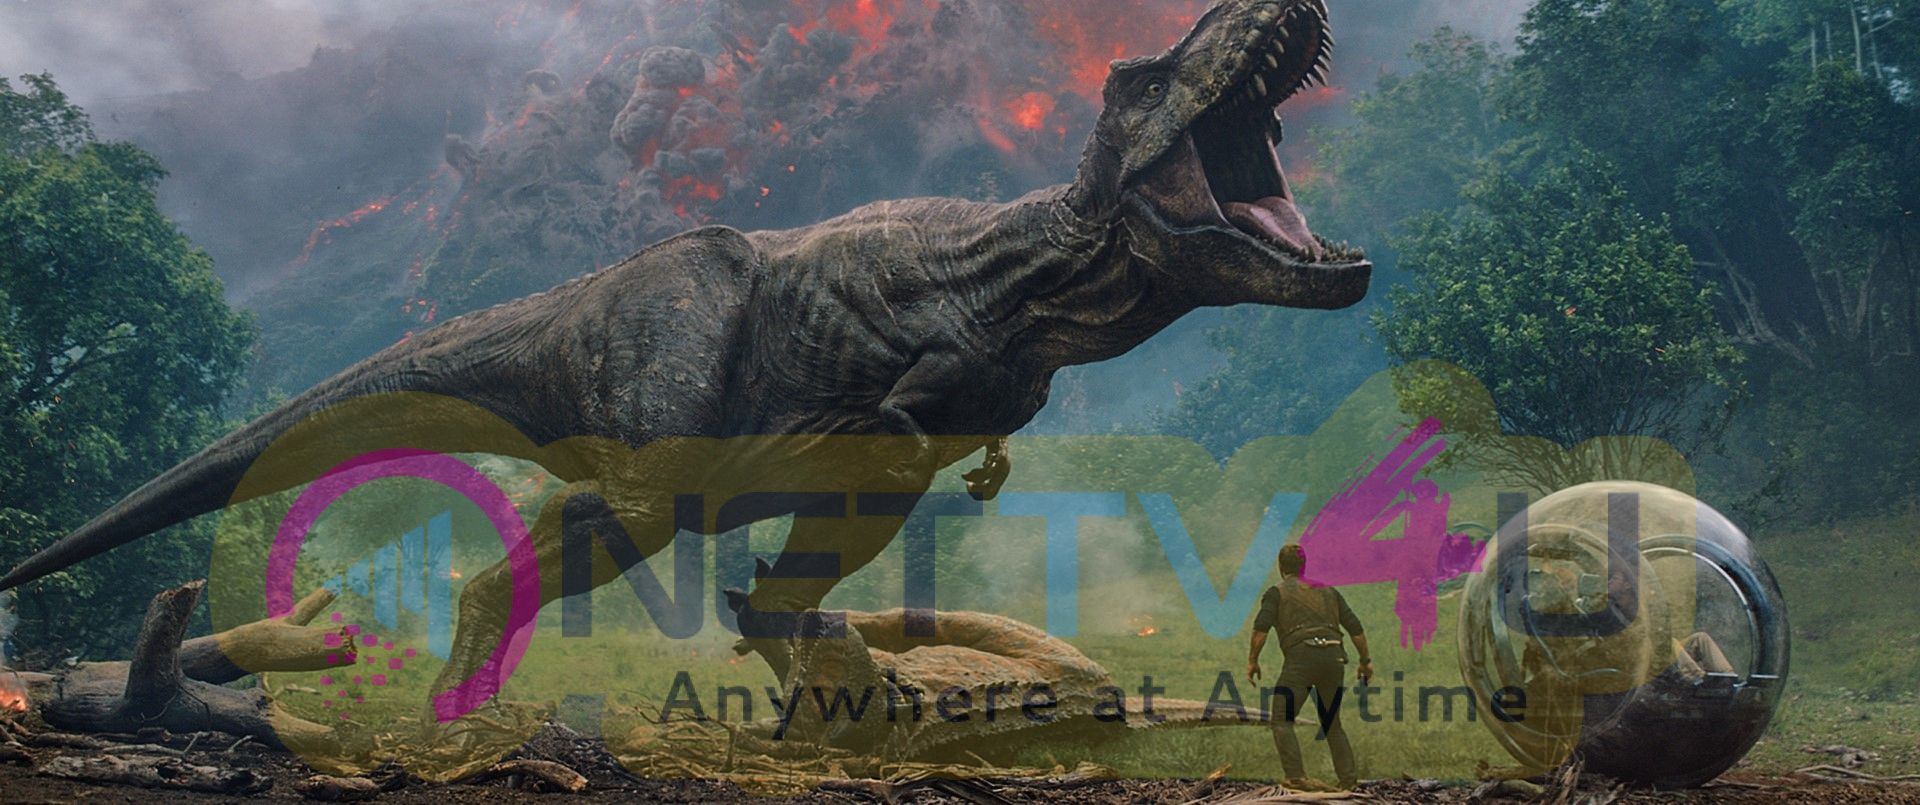 Jurassic World: Fallen Kingdom Movie Stills Tamil Gallery